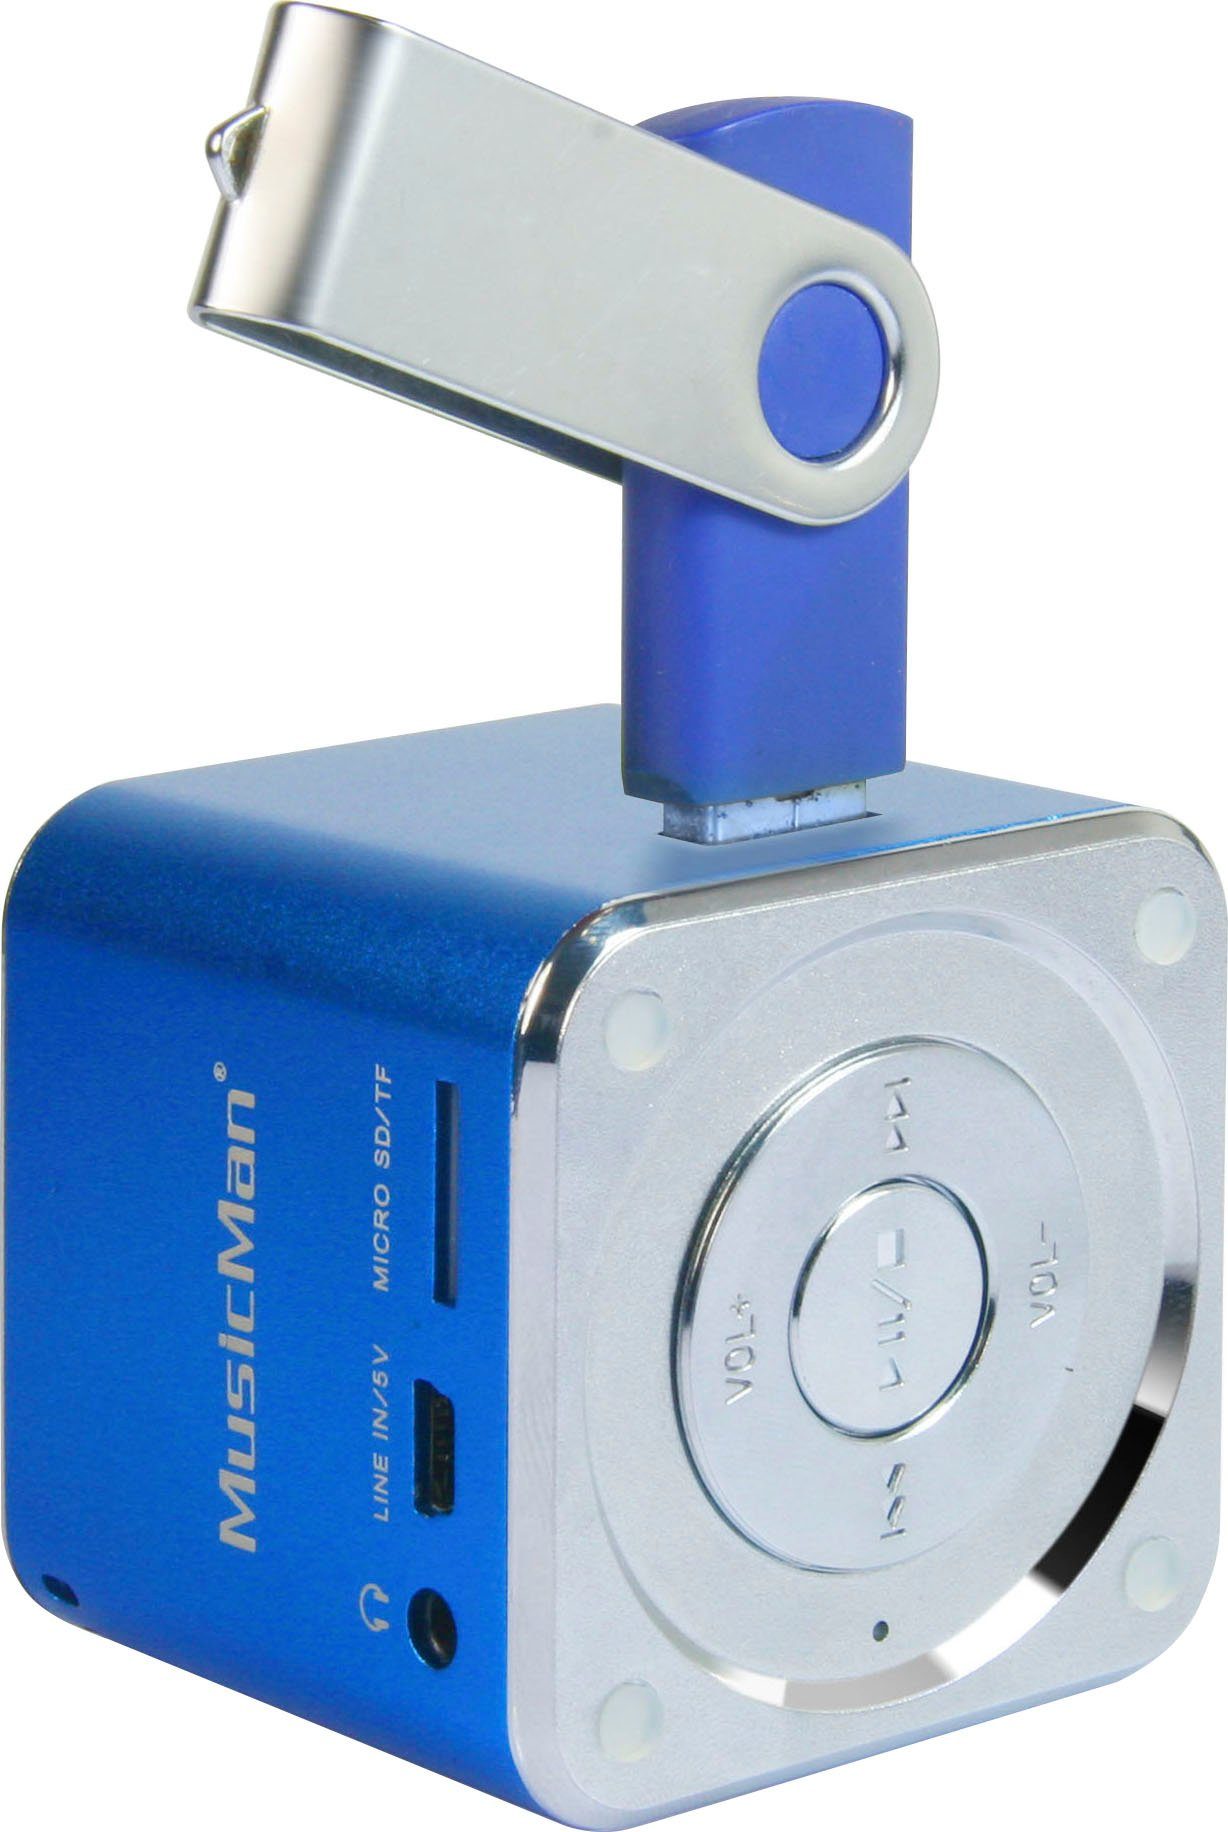 W) Technaxx Soundstation blau Mini MusicMan Portable-Lautsprecher (3